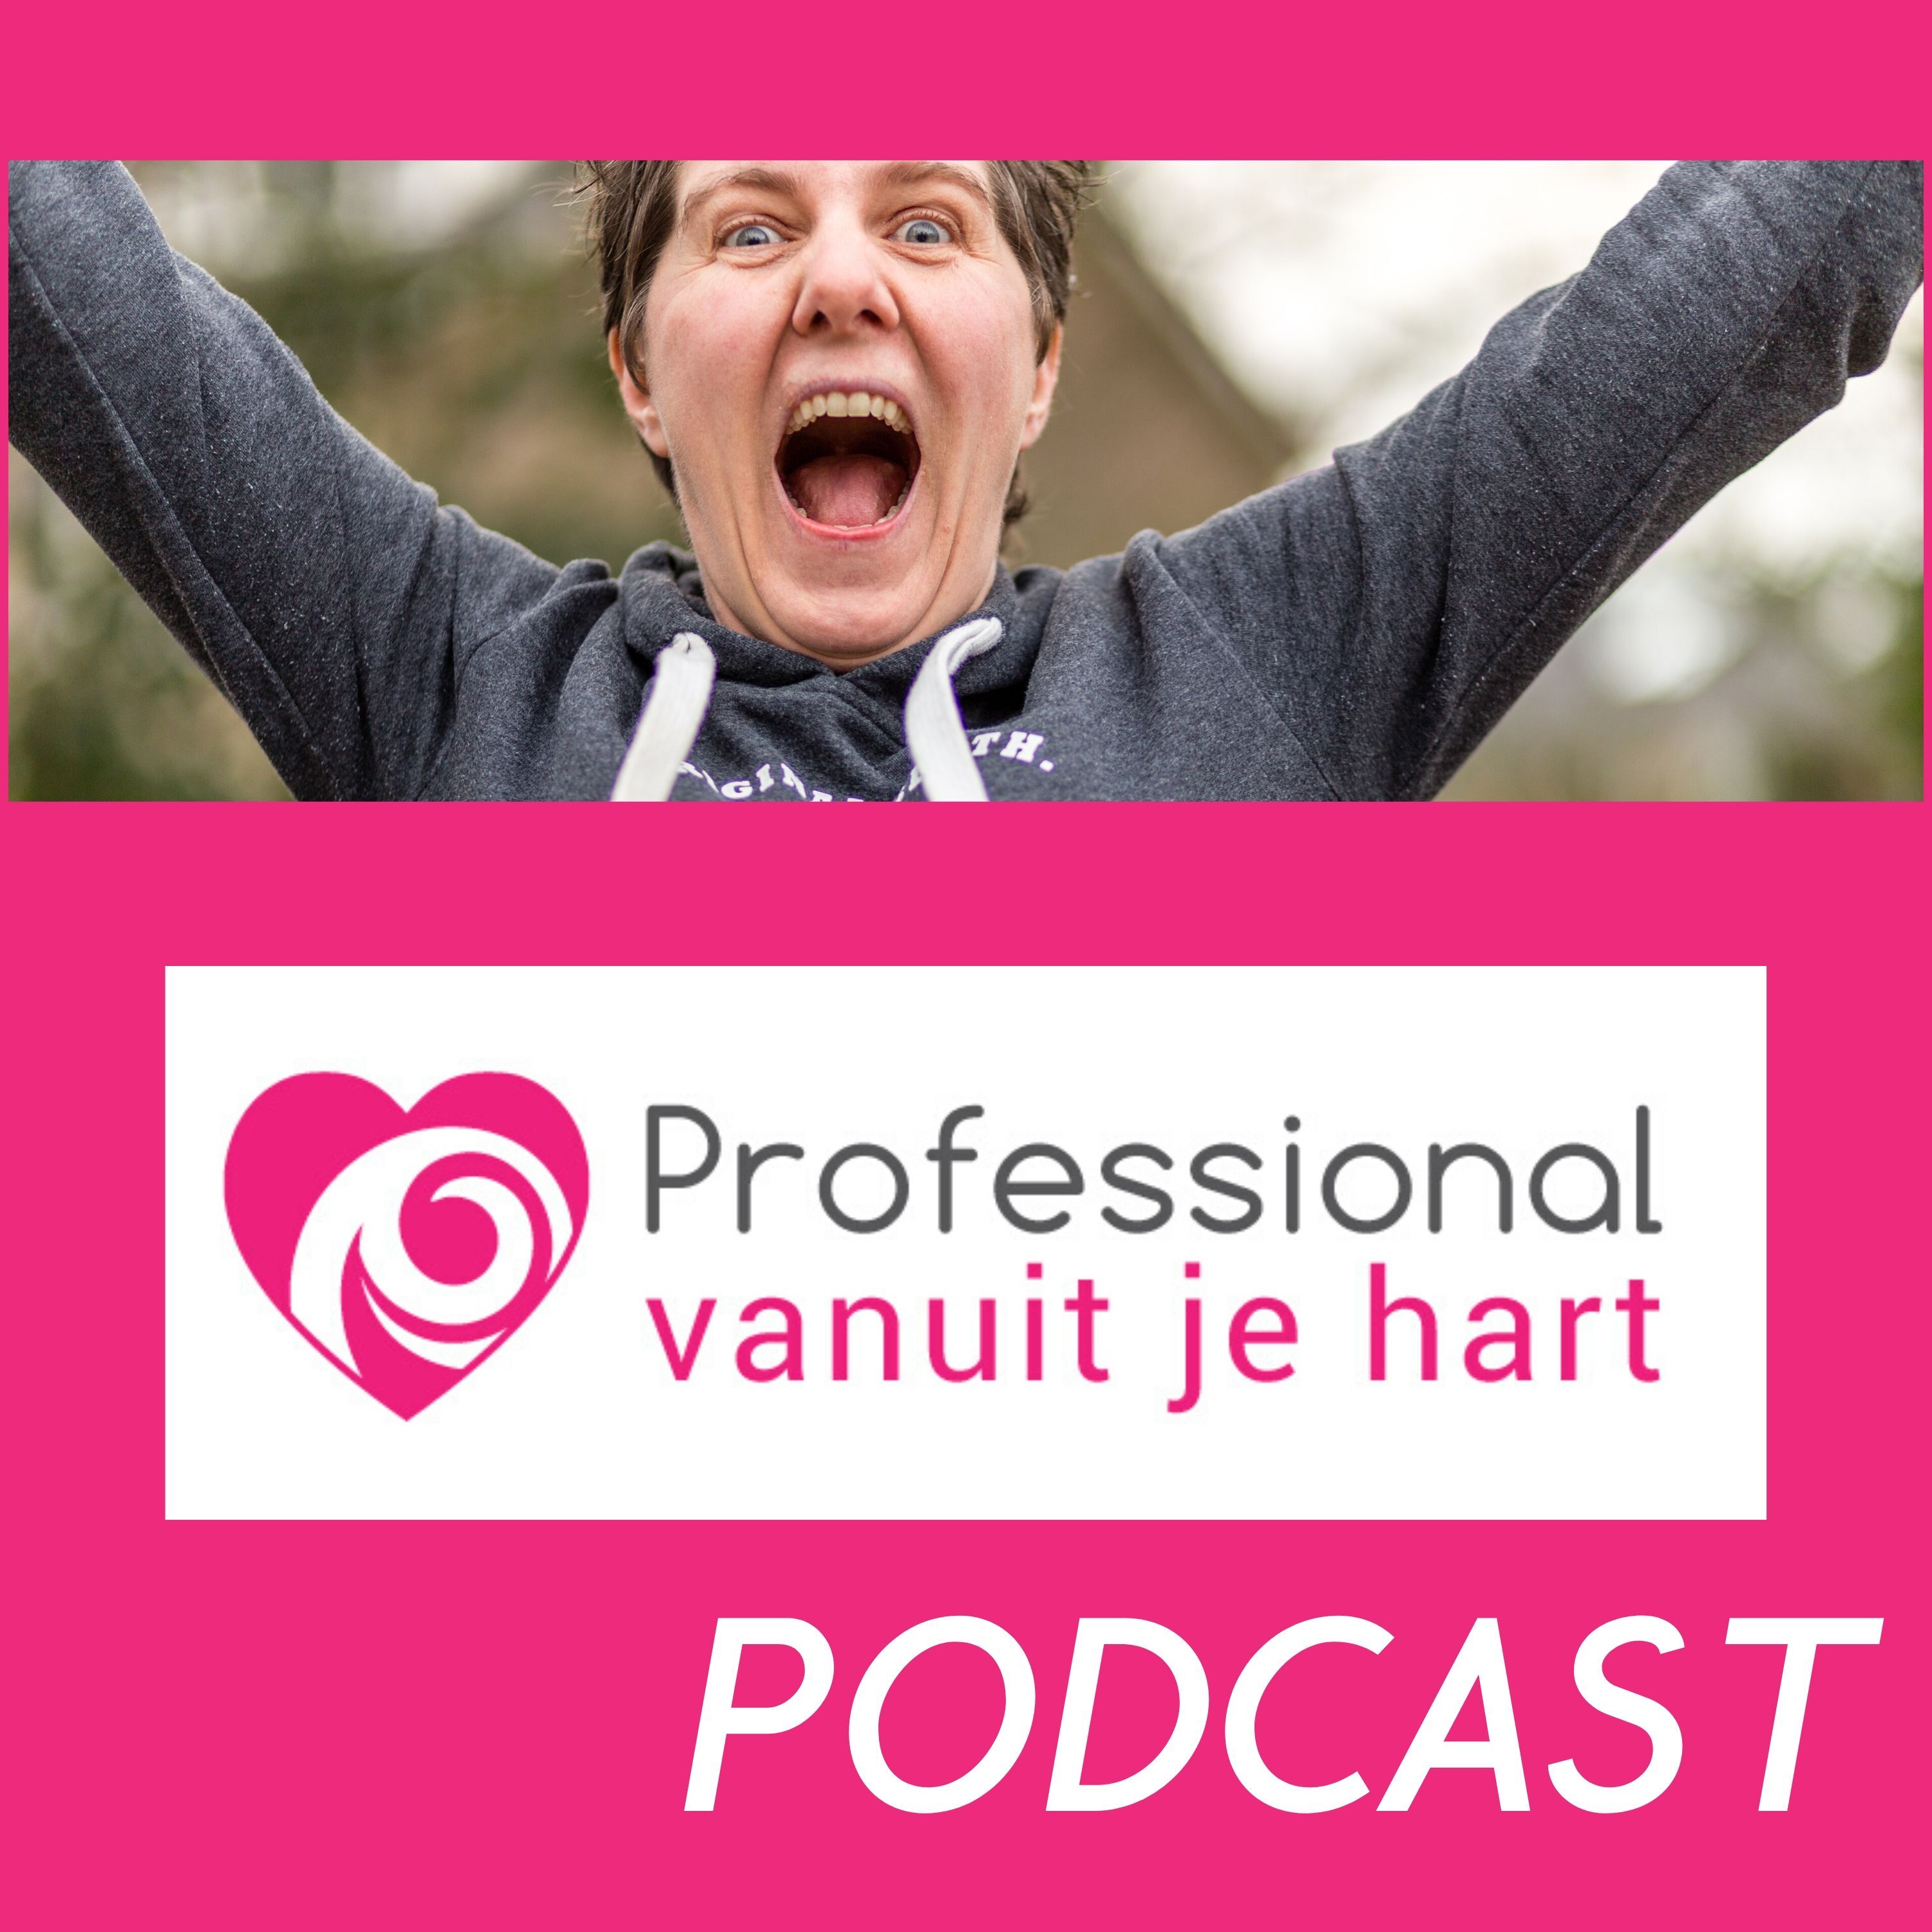 Professional vanuit je hart Podcast - met Mascha Struijk